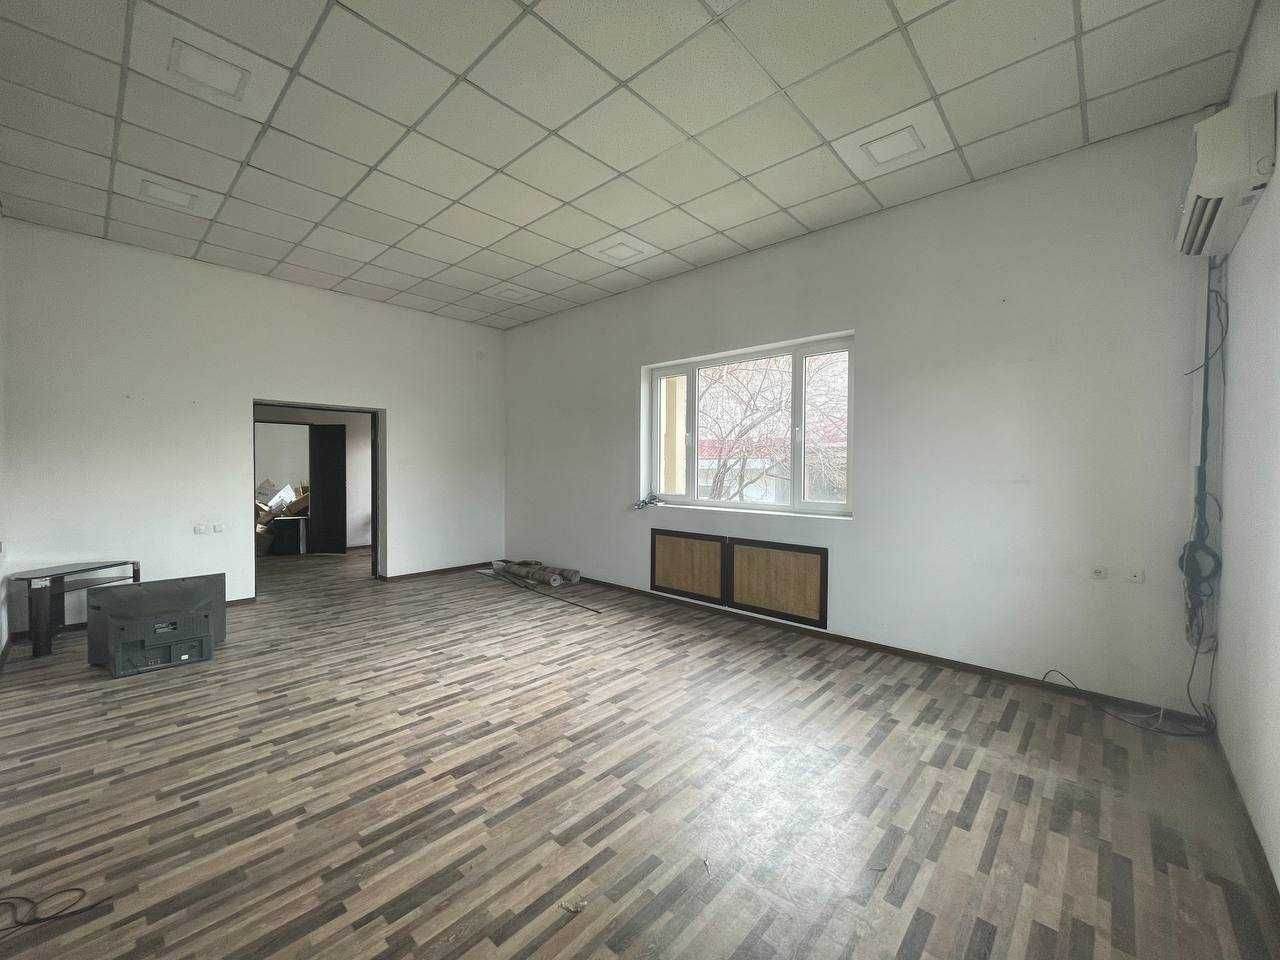 Продаётся  дом 4 сот. 360 м² в Мирзо-Улугбекском районе J2255